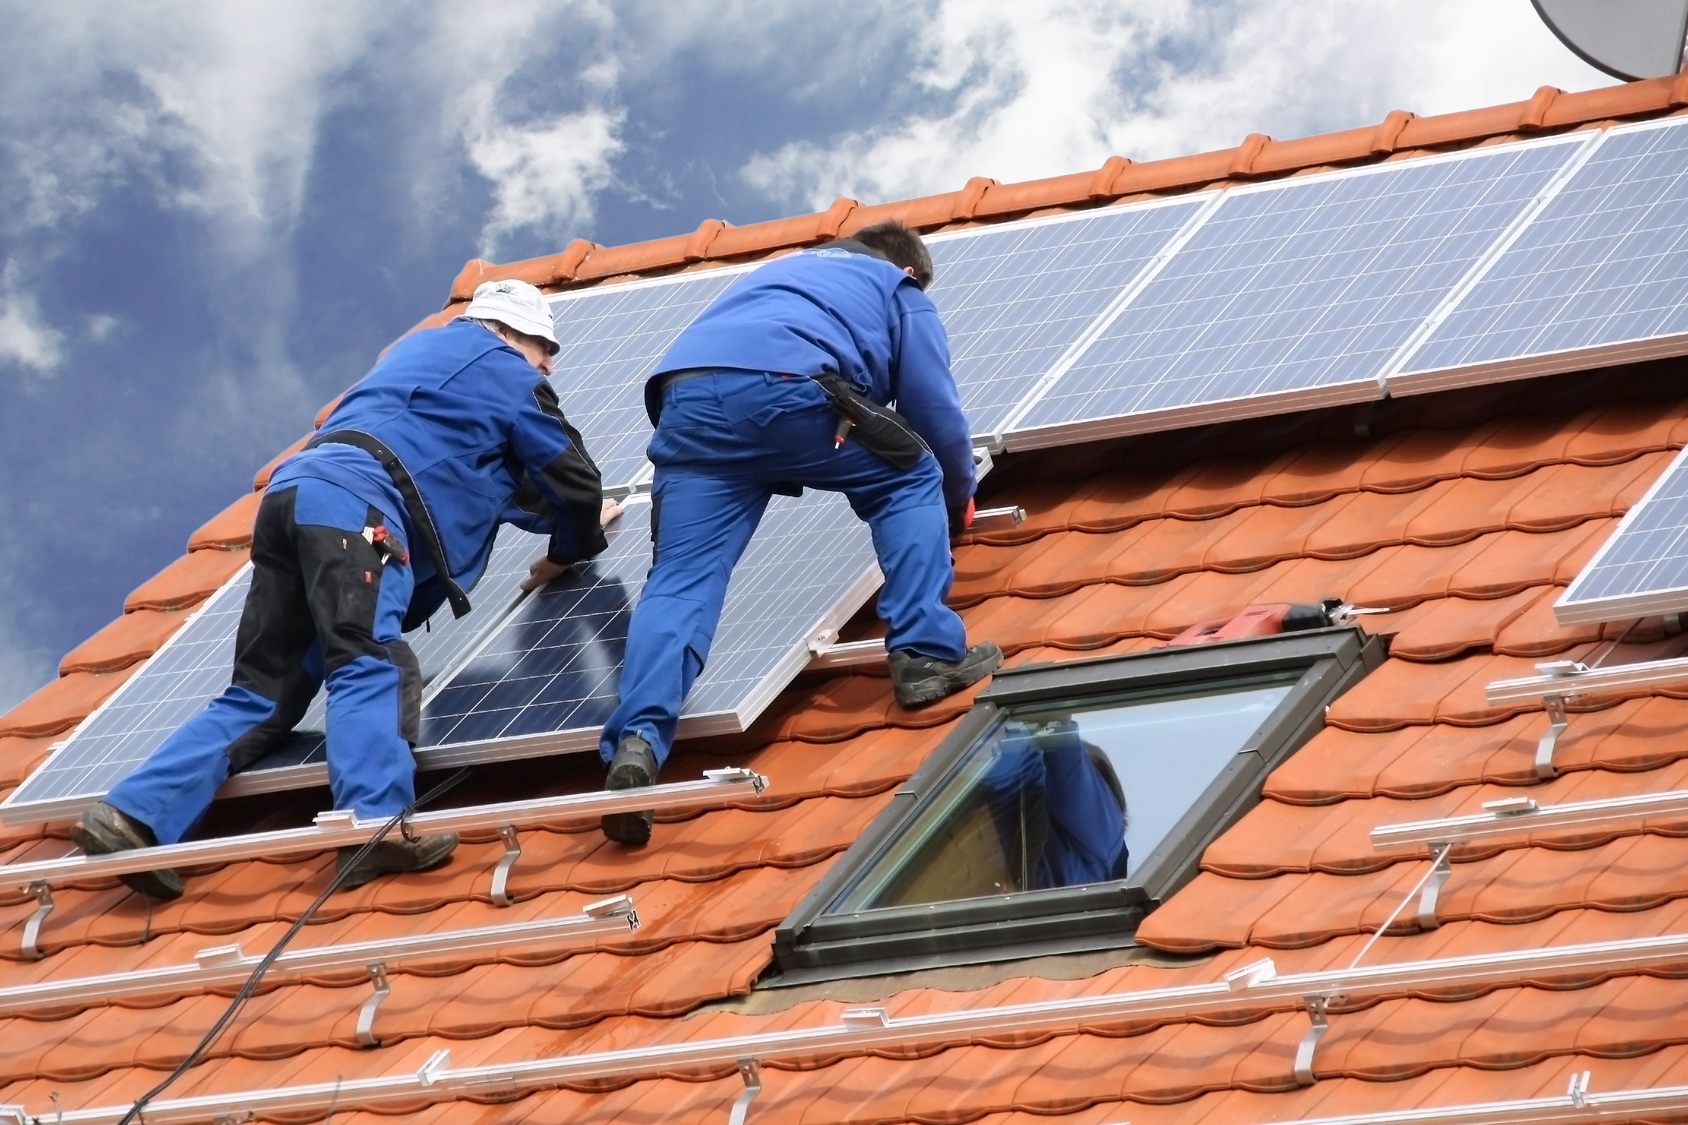 Eurobank: Πρώτη στις χρηματοδοτήσεις οικιακών φωτοβολταϊκών συστημάτων